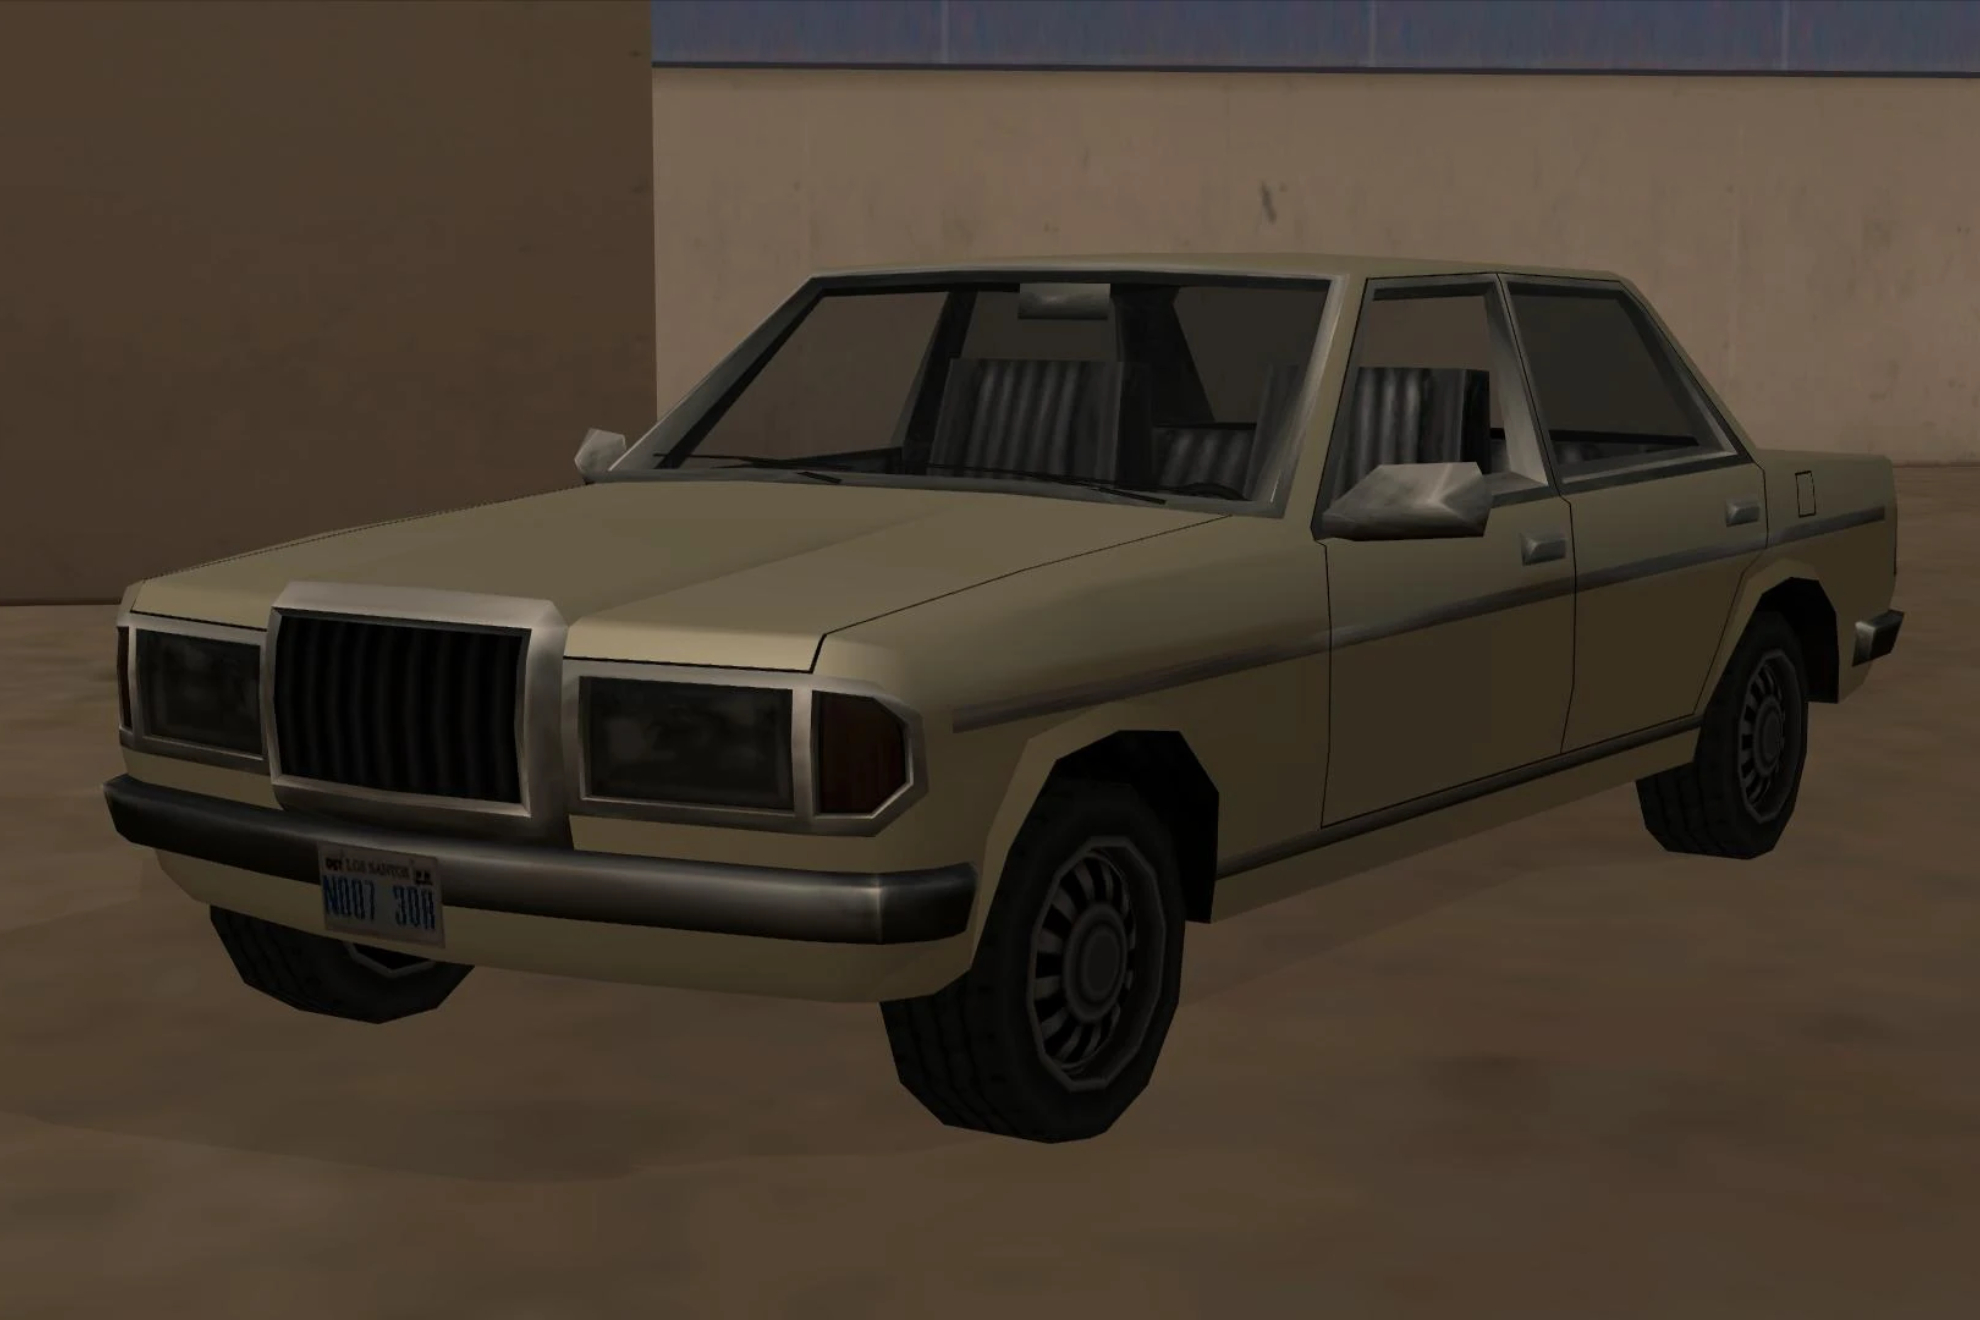 El Admiral, uno de los vehículos más míticos del GTA: San Andreas, siendo uno de los coches que más 'Sex Appeal' te aportaba dentro del videojuego